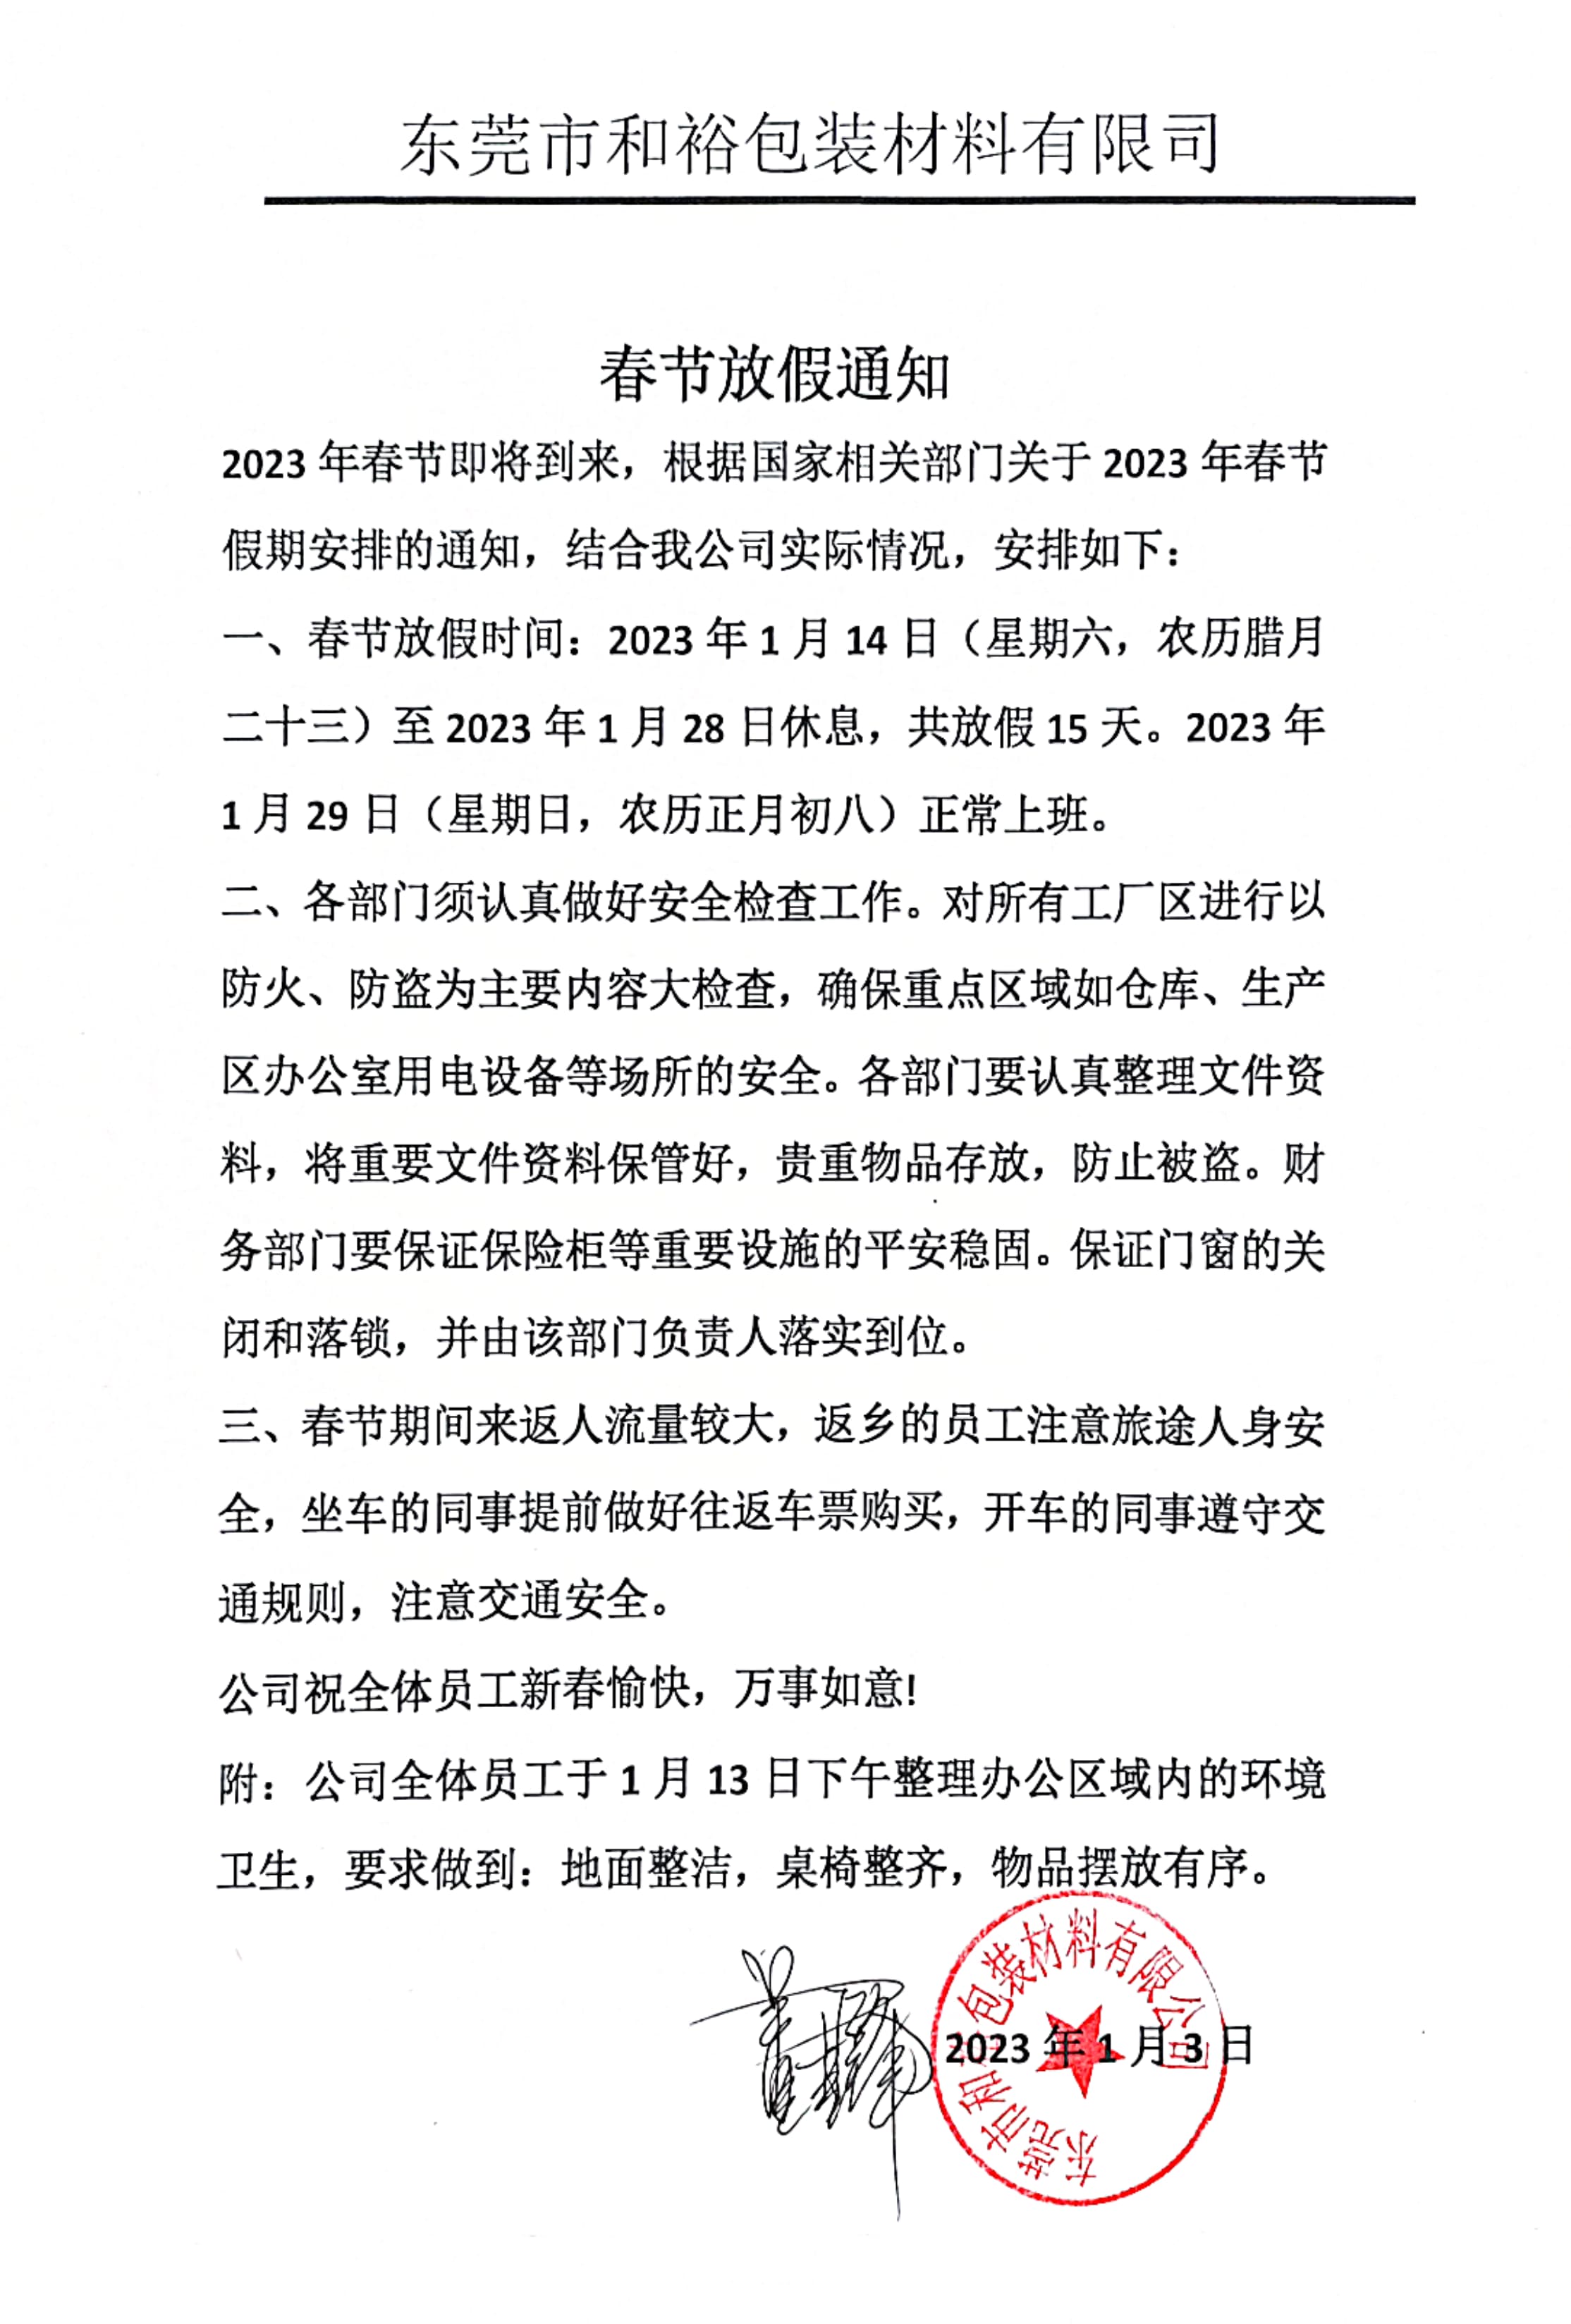 衢州市2023年和裕包装春节放假通知